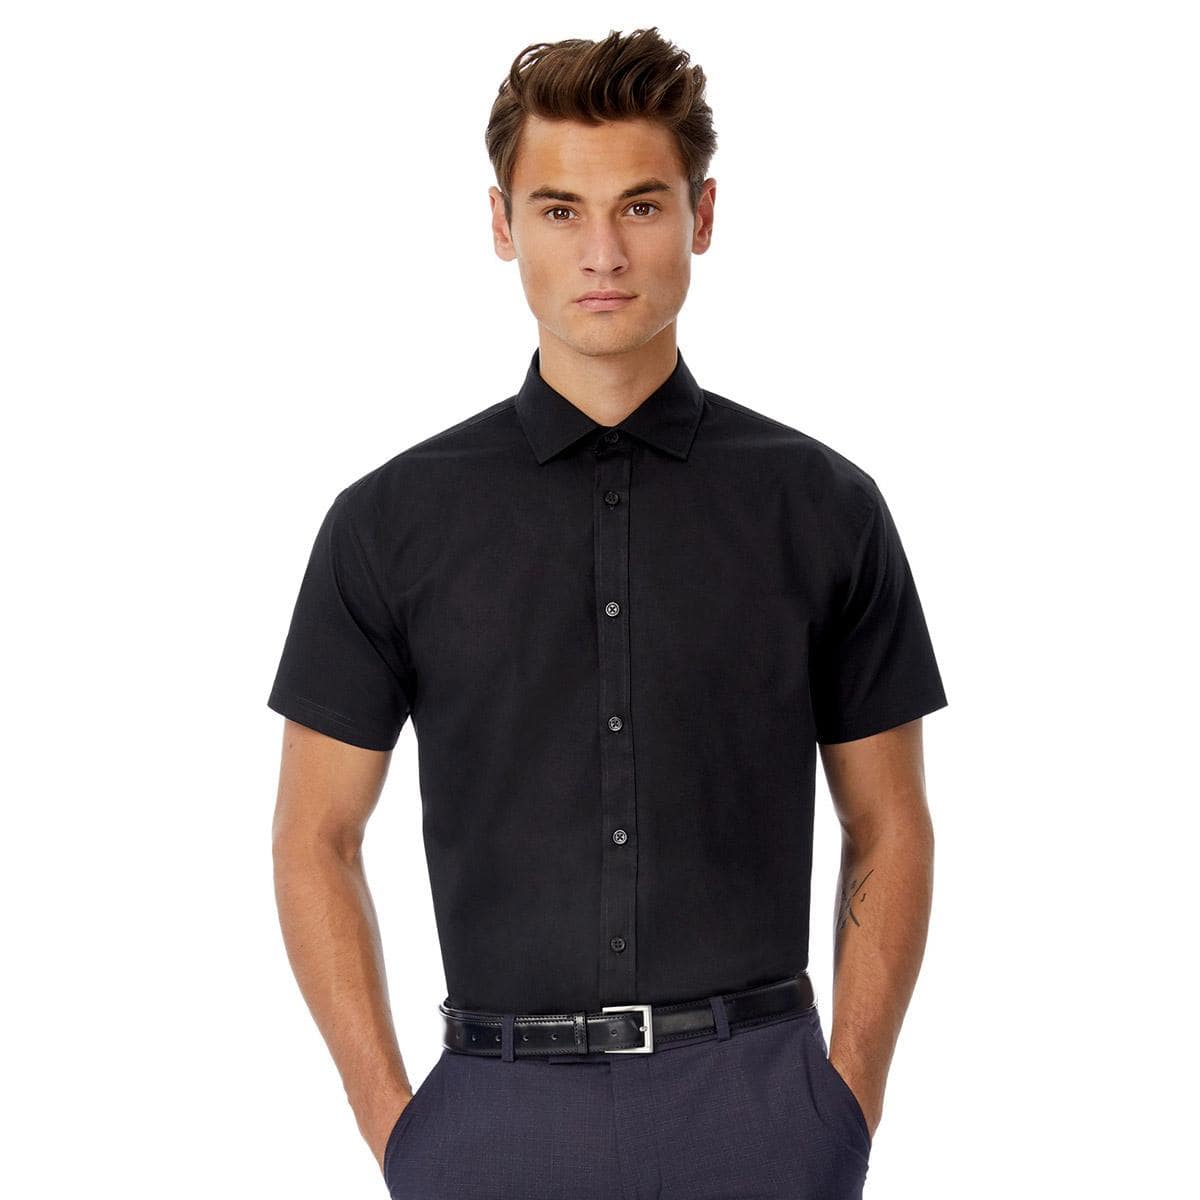 BCSMP22-black-tie-nero-camicia-uomo-elasticizzata-b&c-manica-corta-min